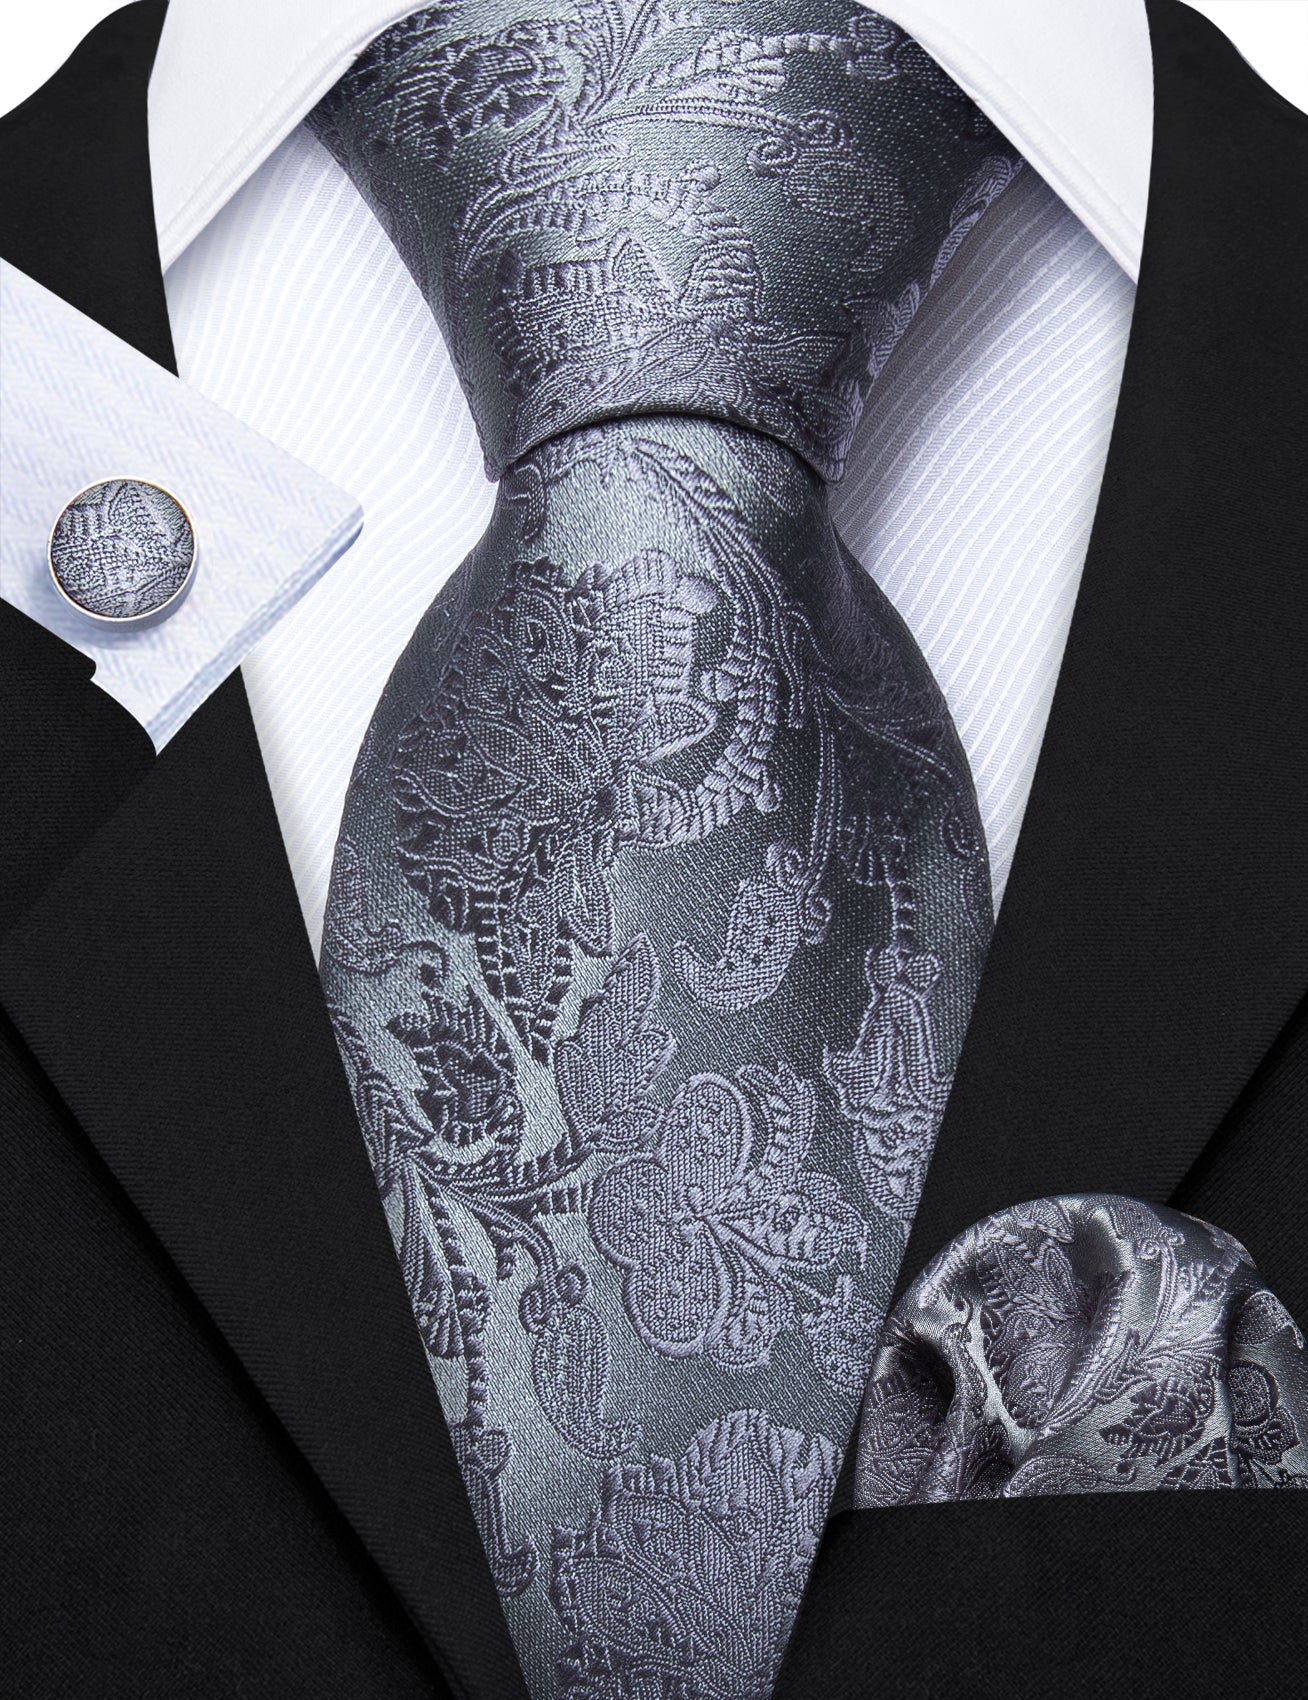 Grey Floral Silk 63 Inches Tie Hanky Cufflinks Set